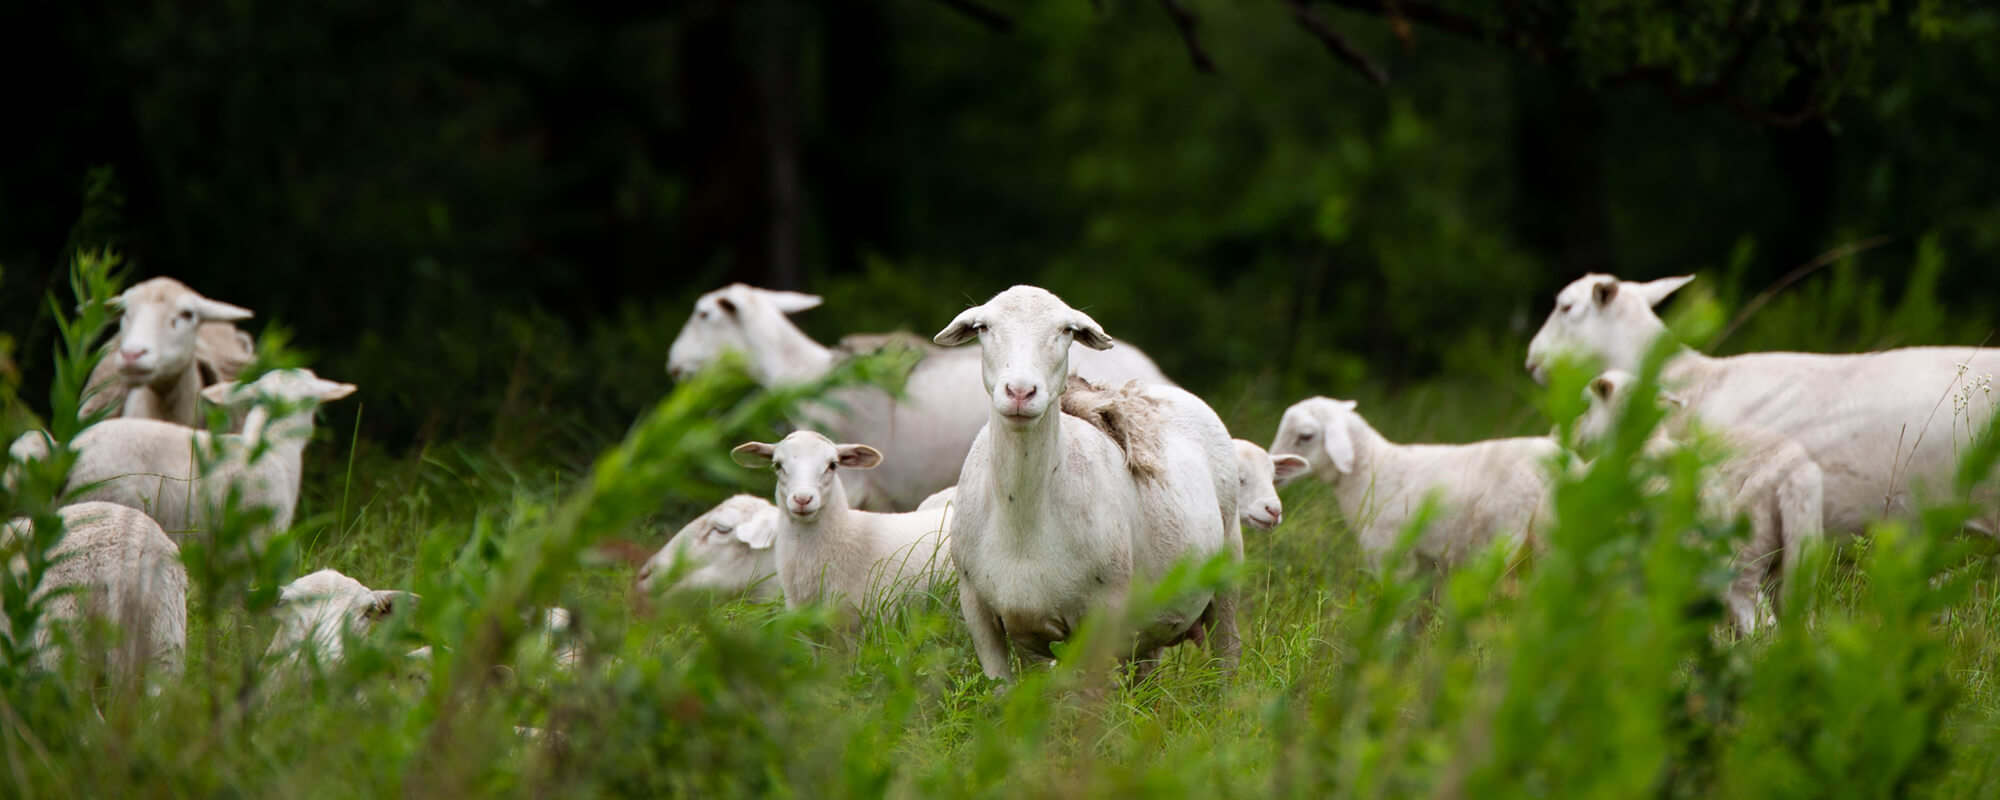 Herd of hair sheep